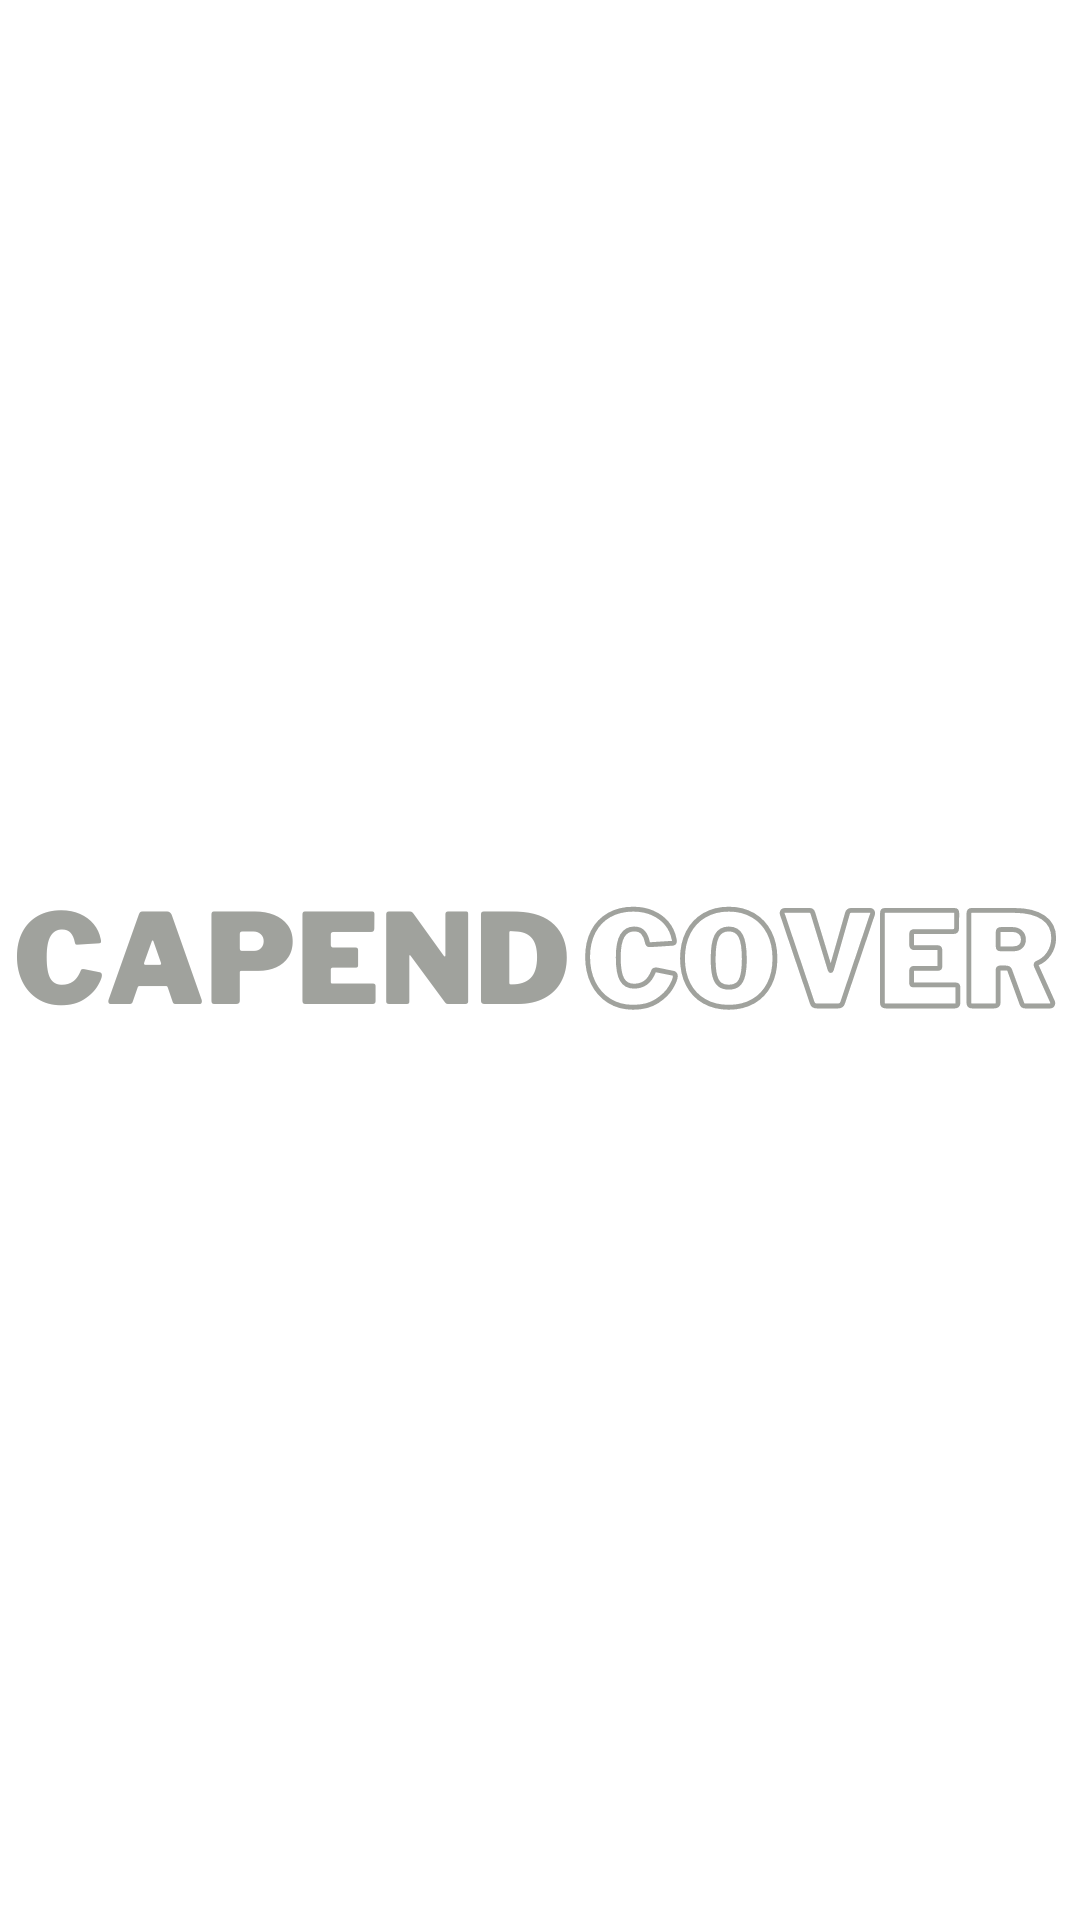 Capend Cover Title